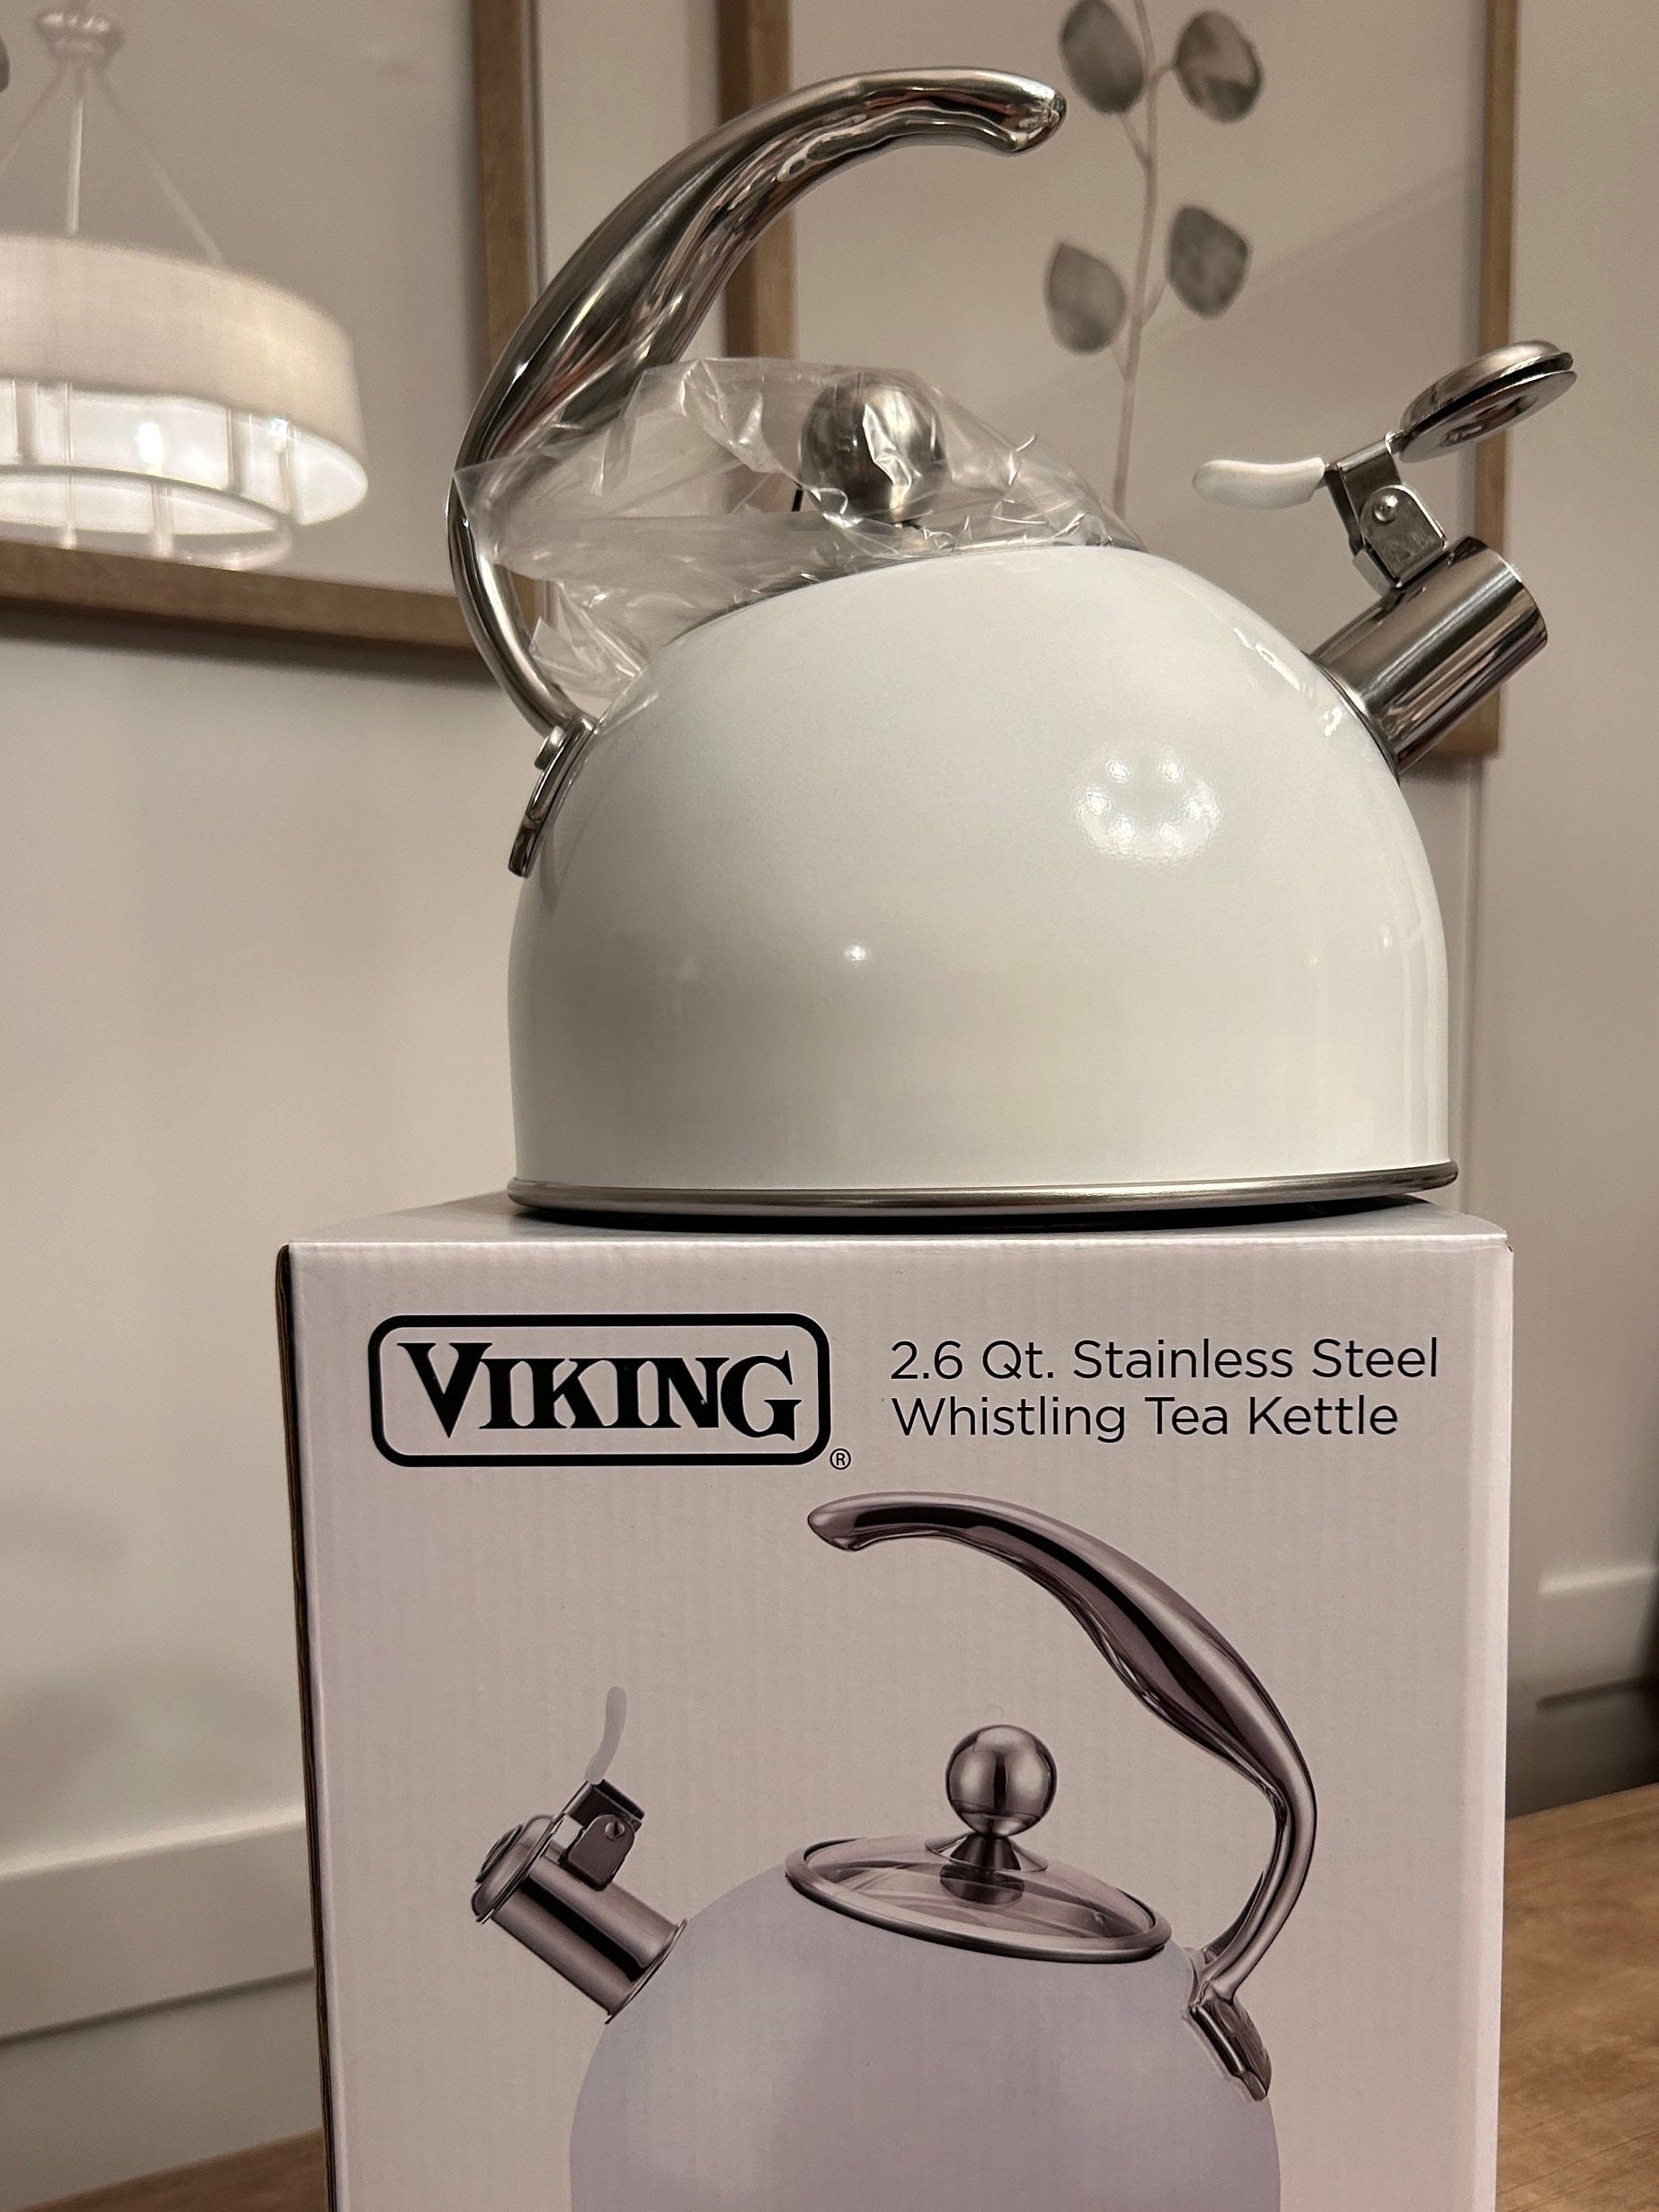 Viking Stainless Steel Whistling Tea Kettle